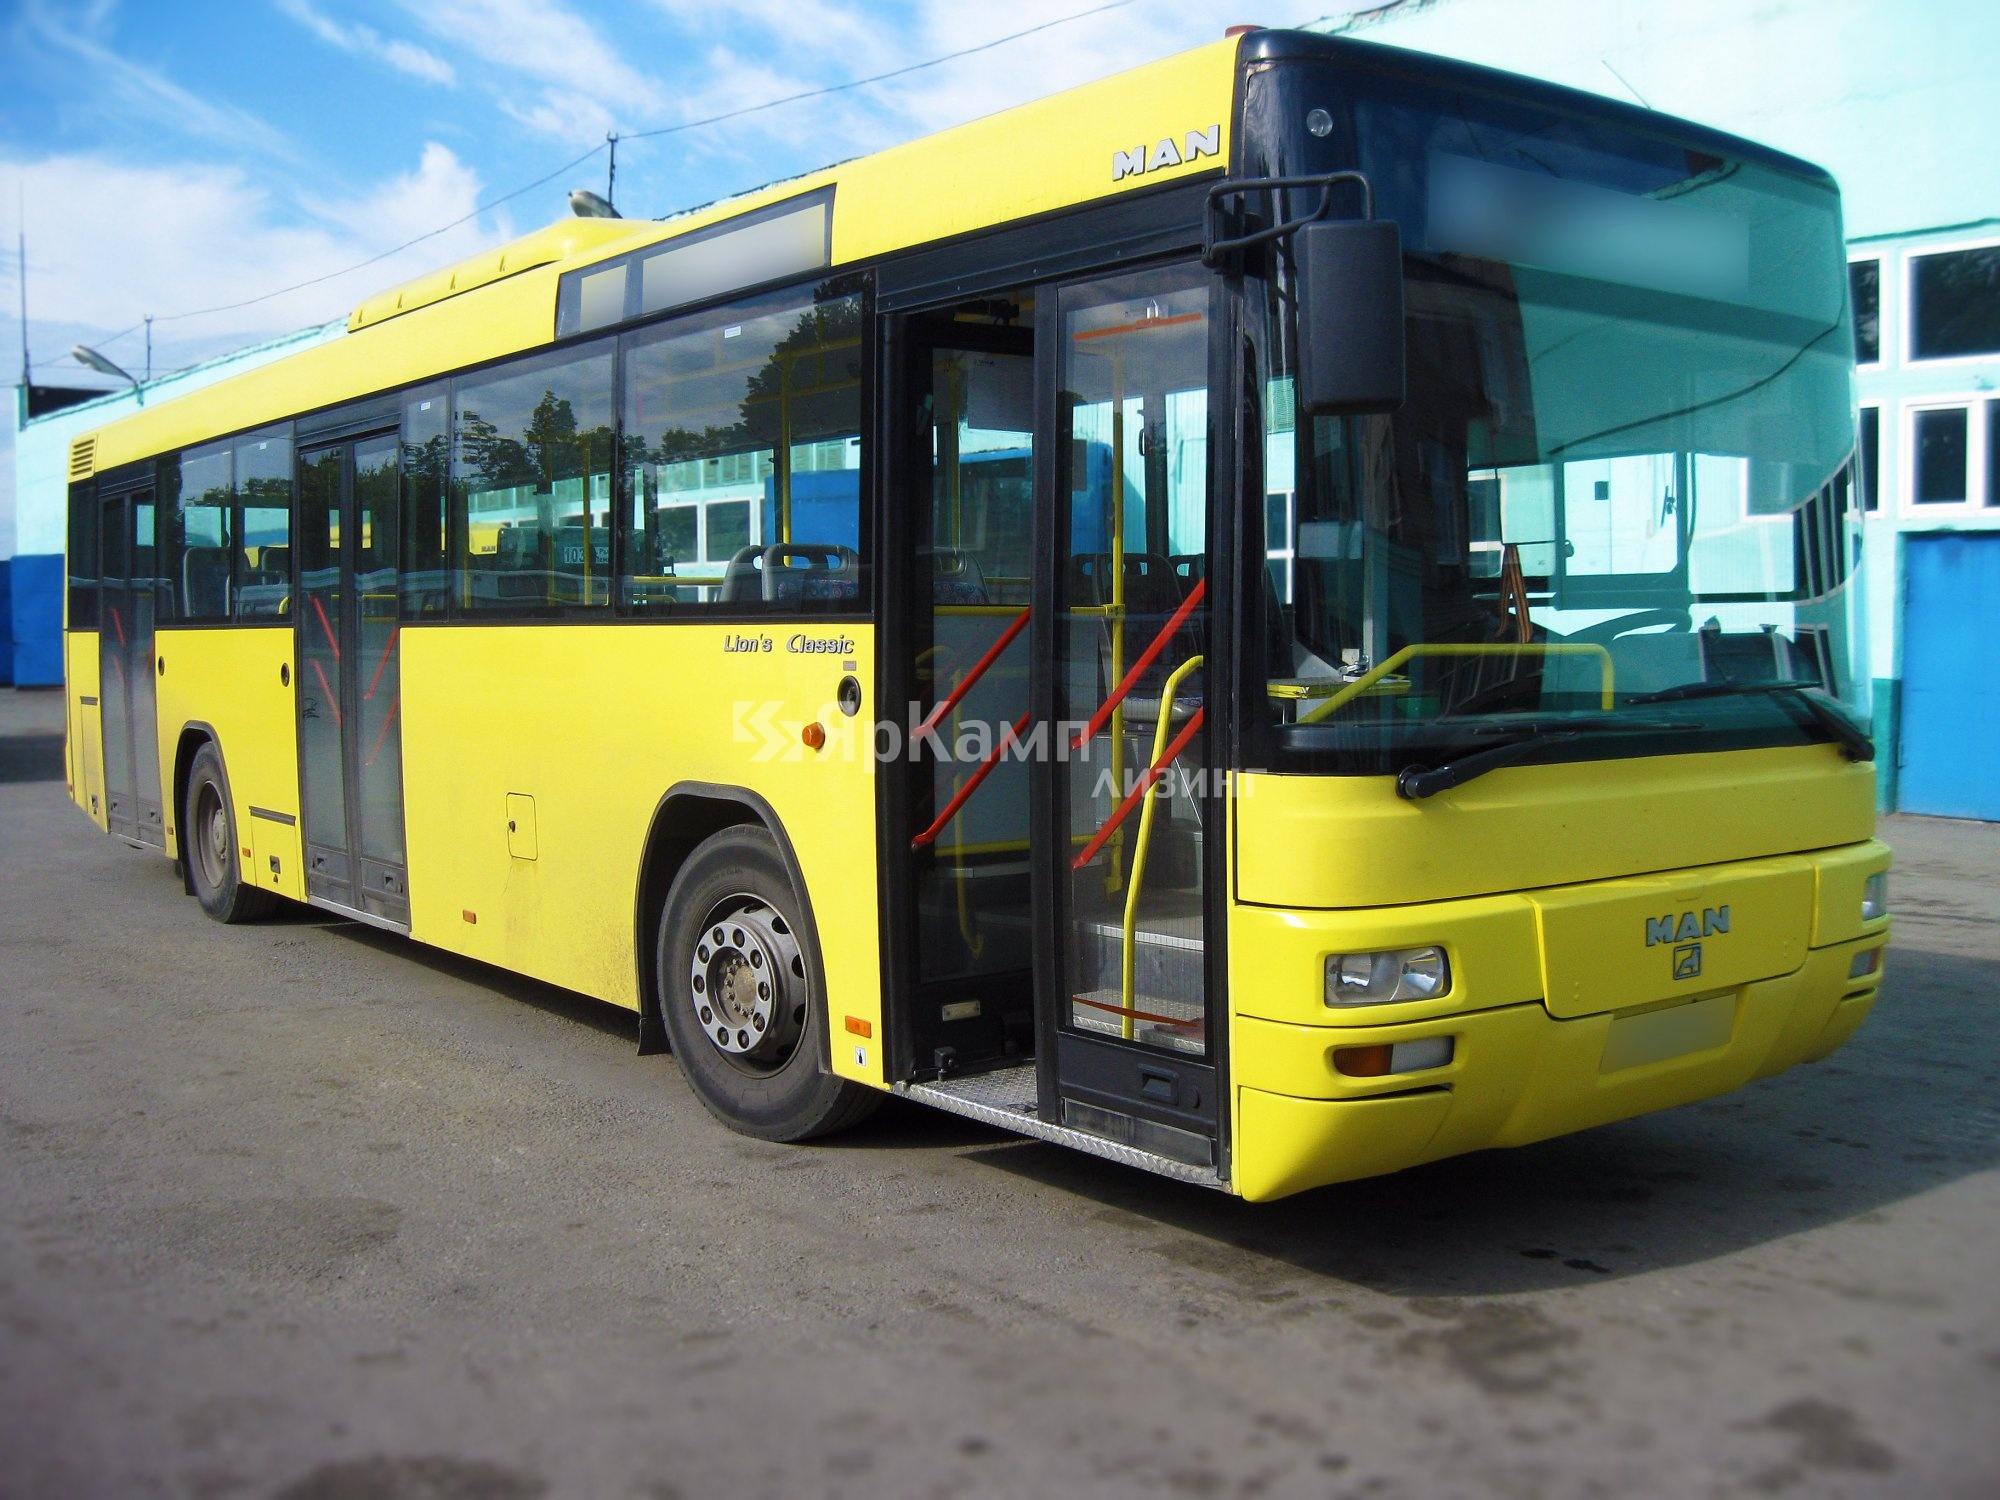 «ЯрКамп-Лизинг» передал в лизинг 6 автобусов MAN Lions Classic в Липецкую область